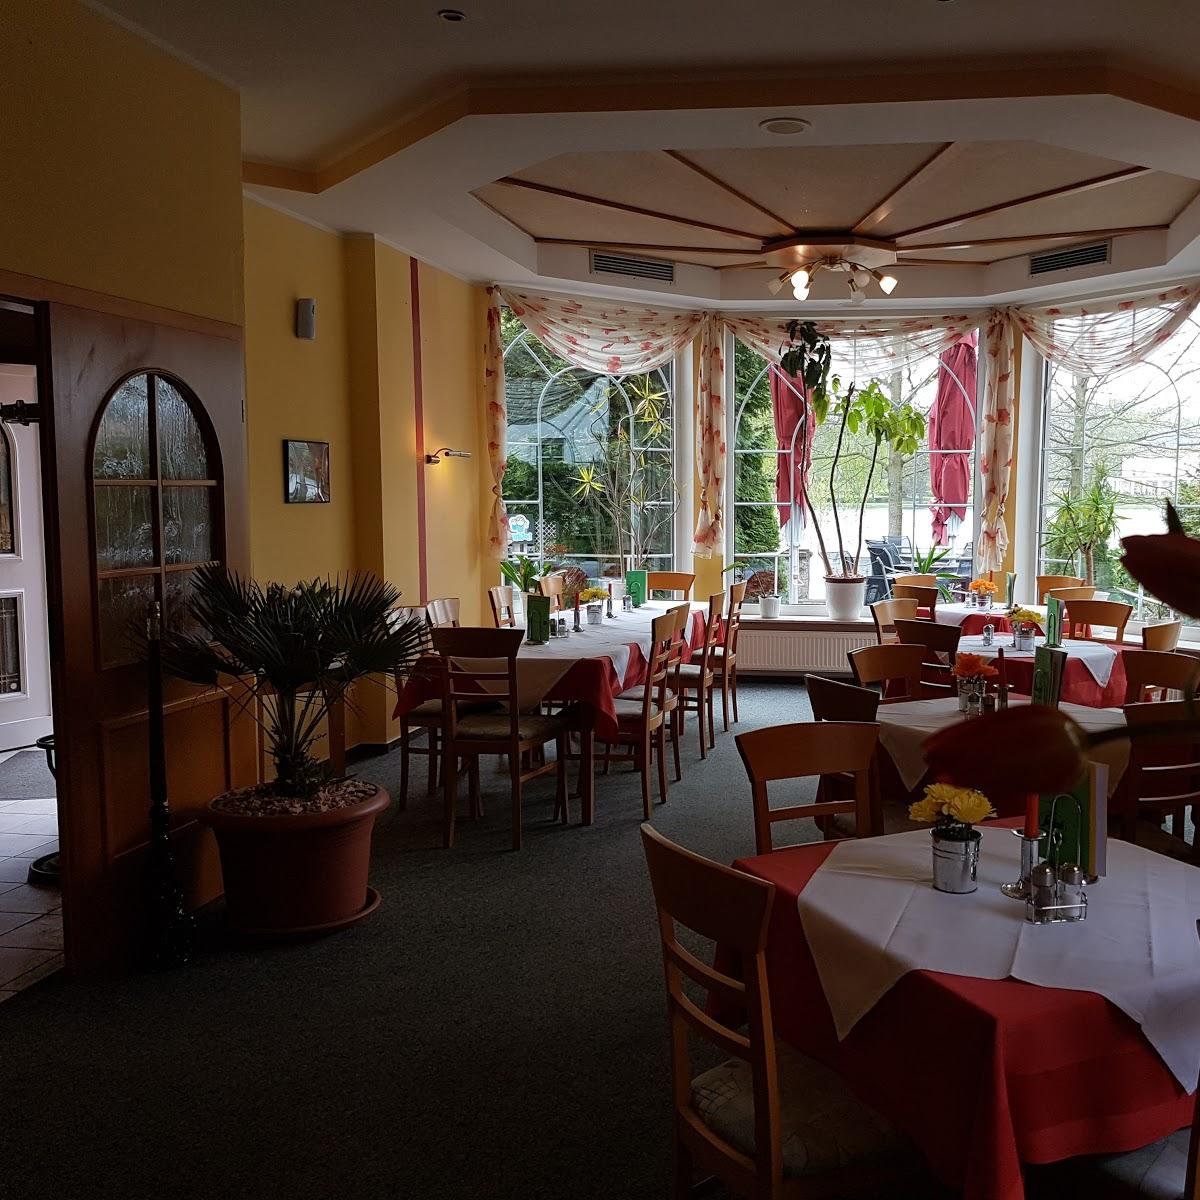 Restaurant "Calabria" in Bad Salzungen